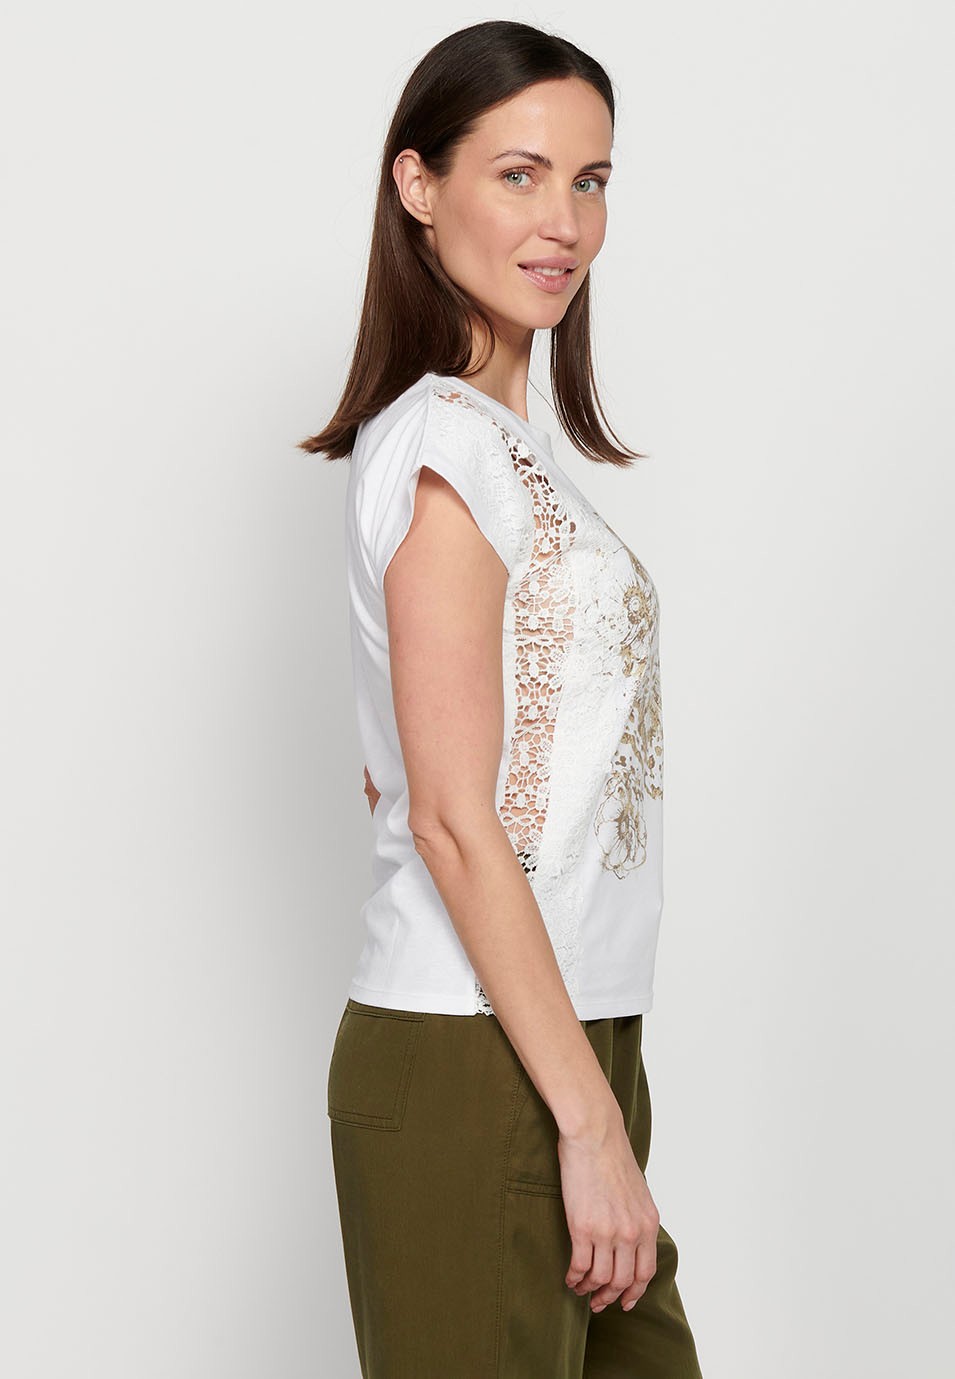 T-shirt à manches courtes avec détail en dentelle et imprimé sur le devant, couleur blanche pour femme